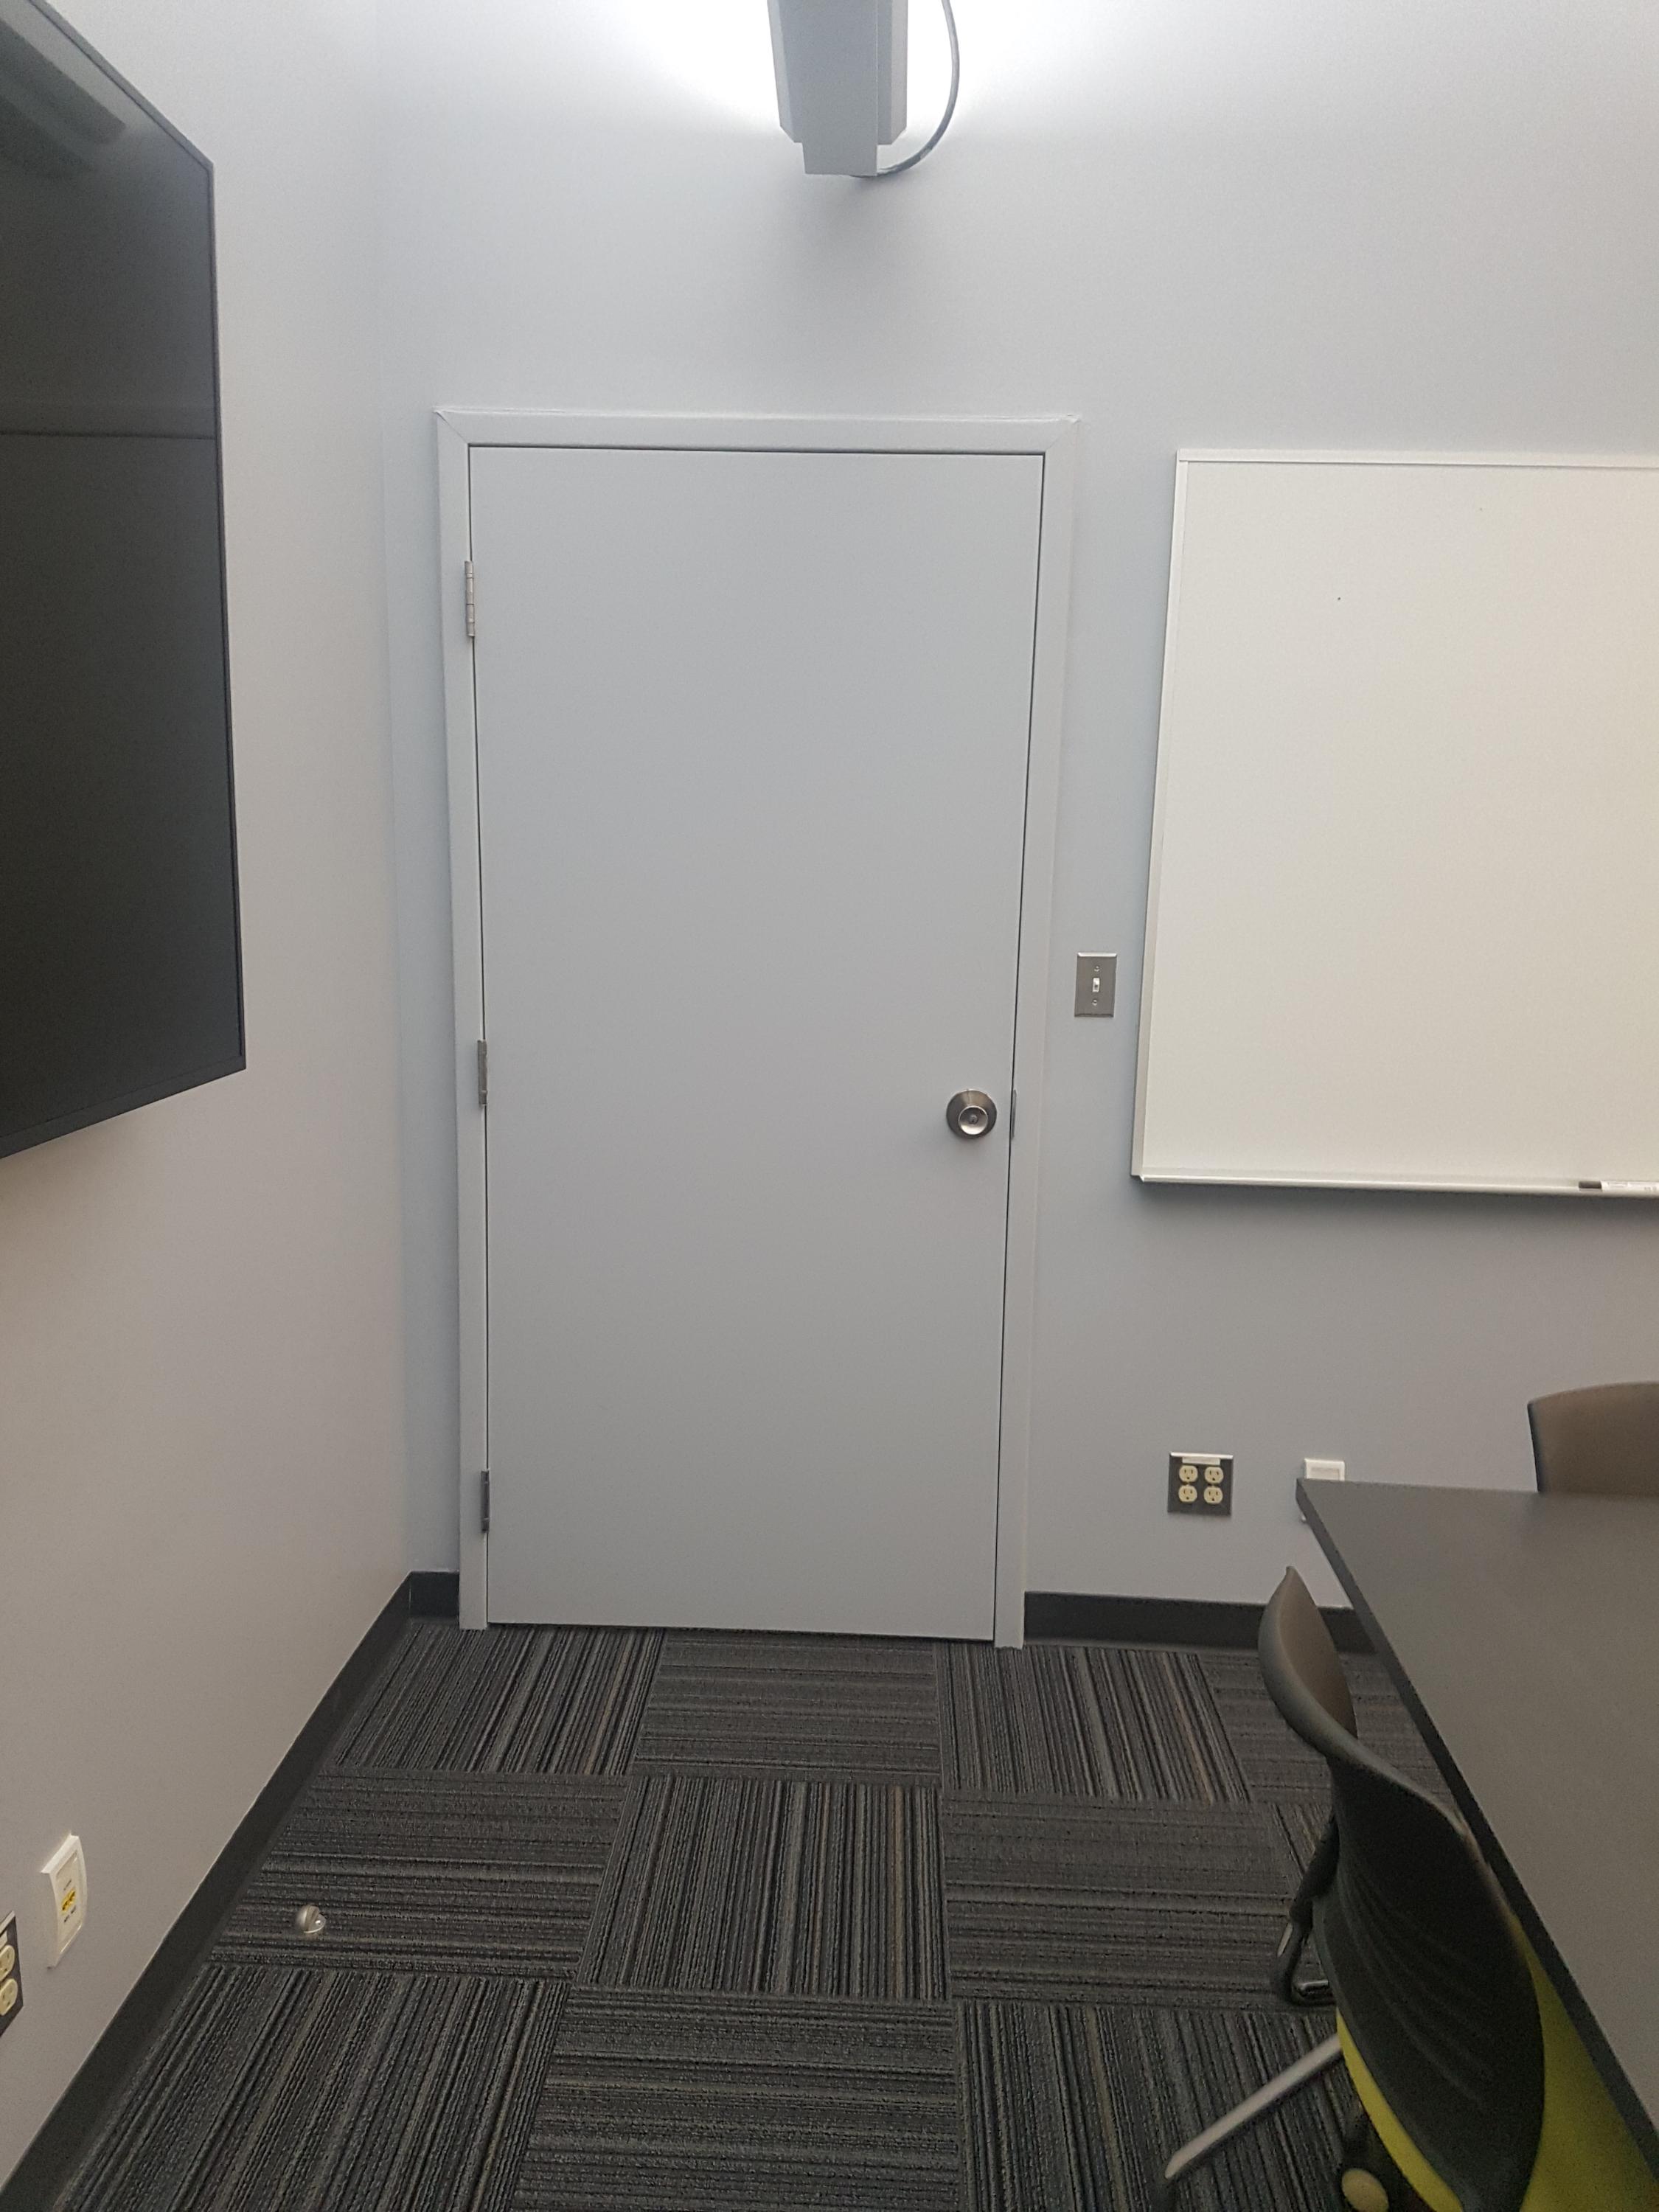 Doorway to other lab